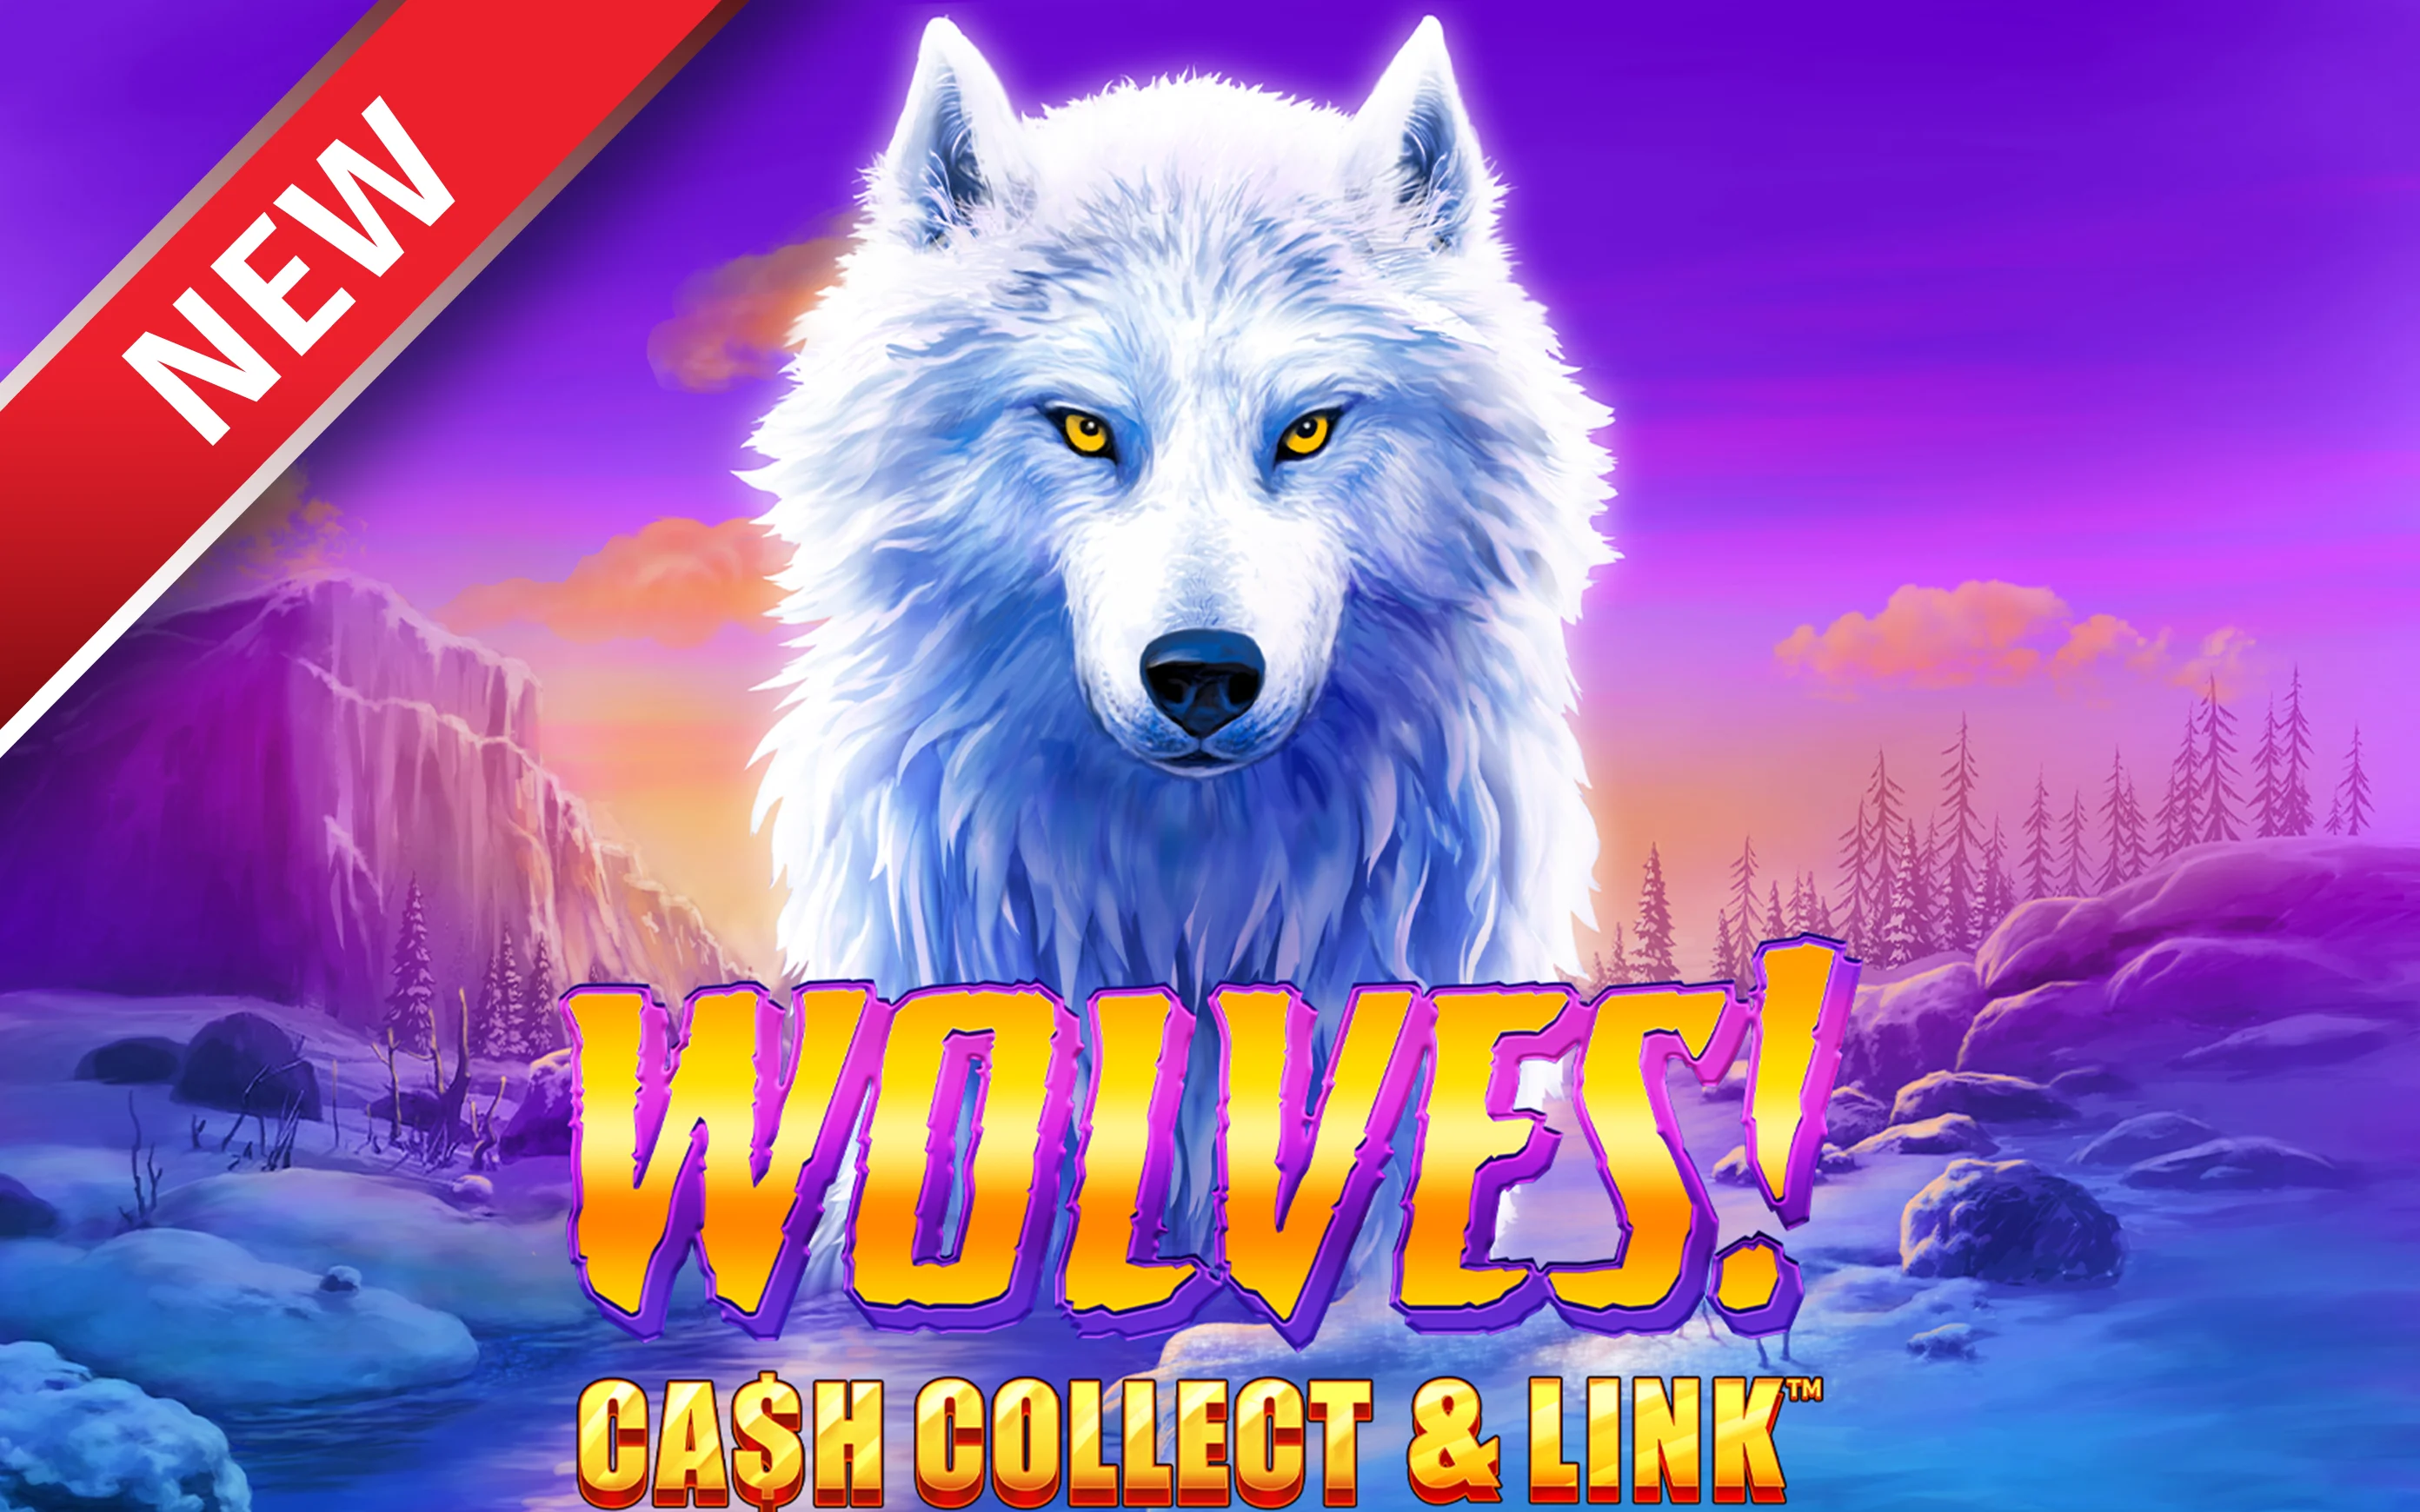 Spil Wolves! Cash Collect & Link™ på Starcasino.be online kasino
